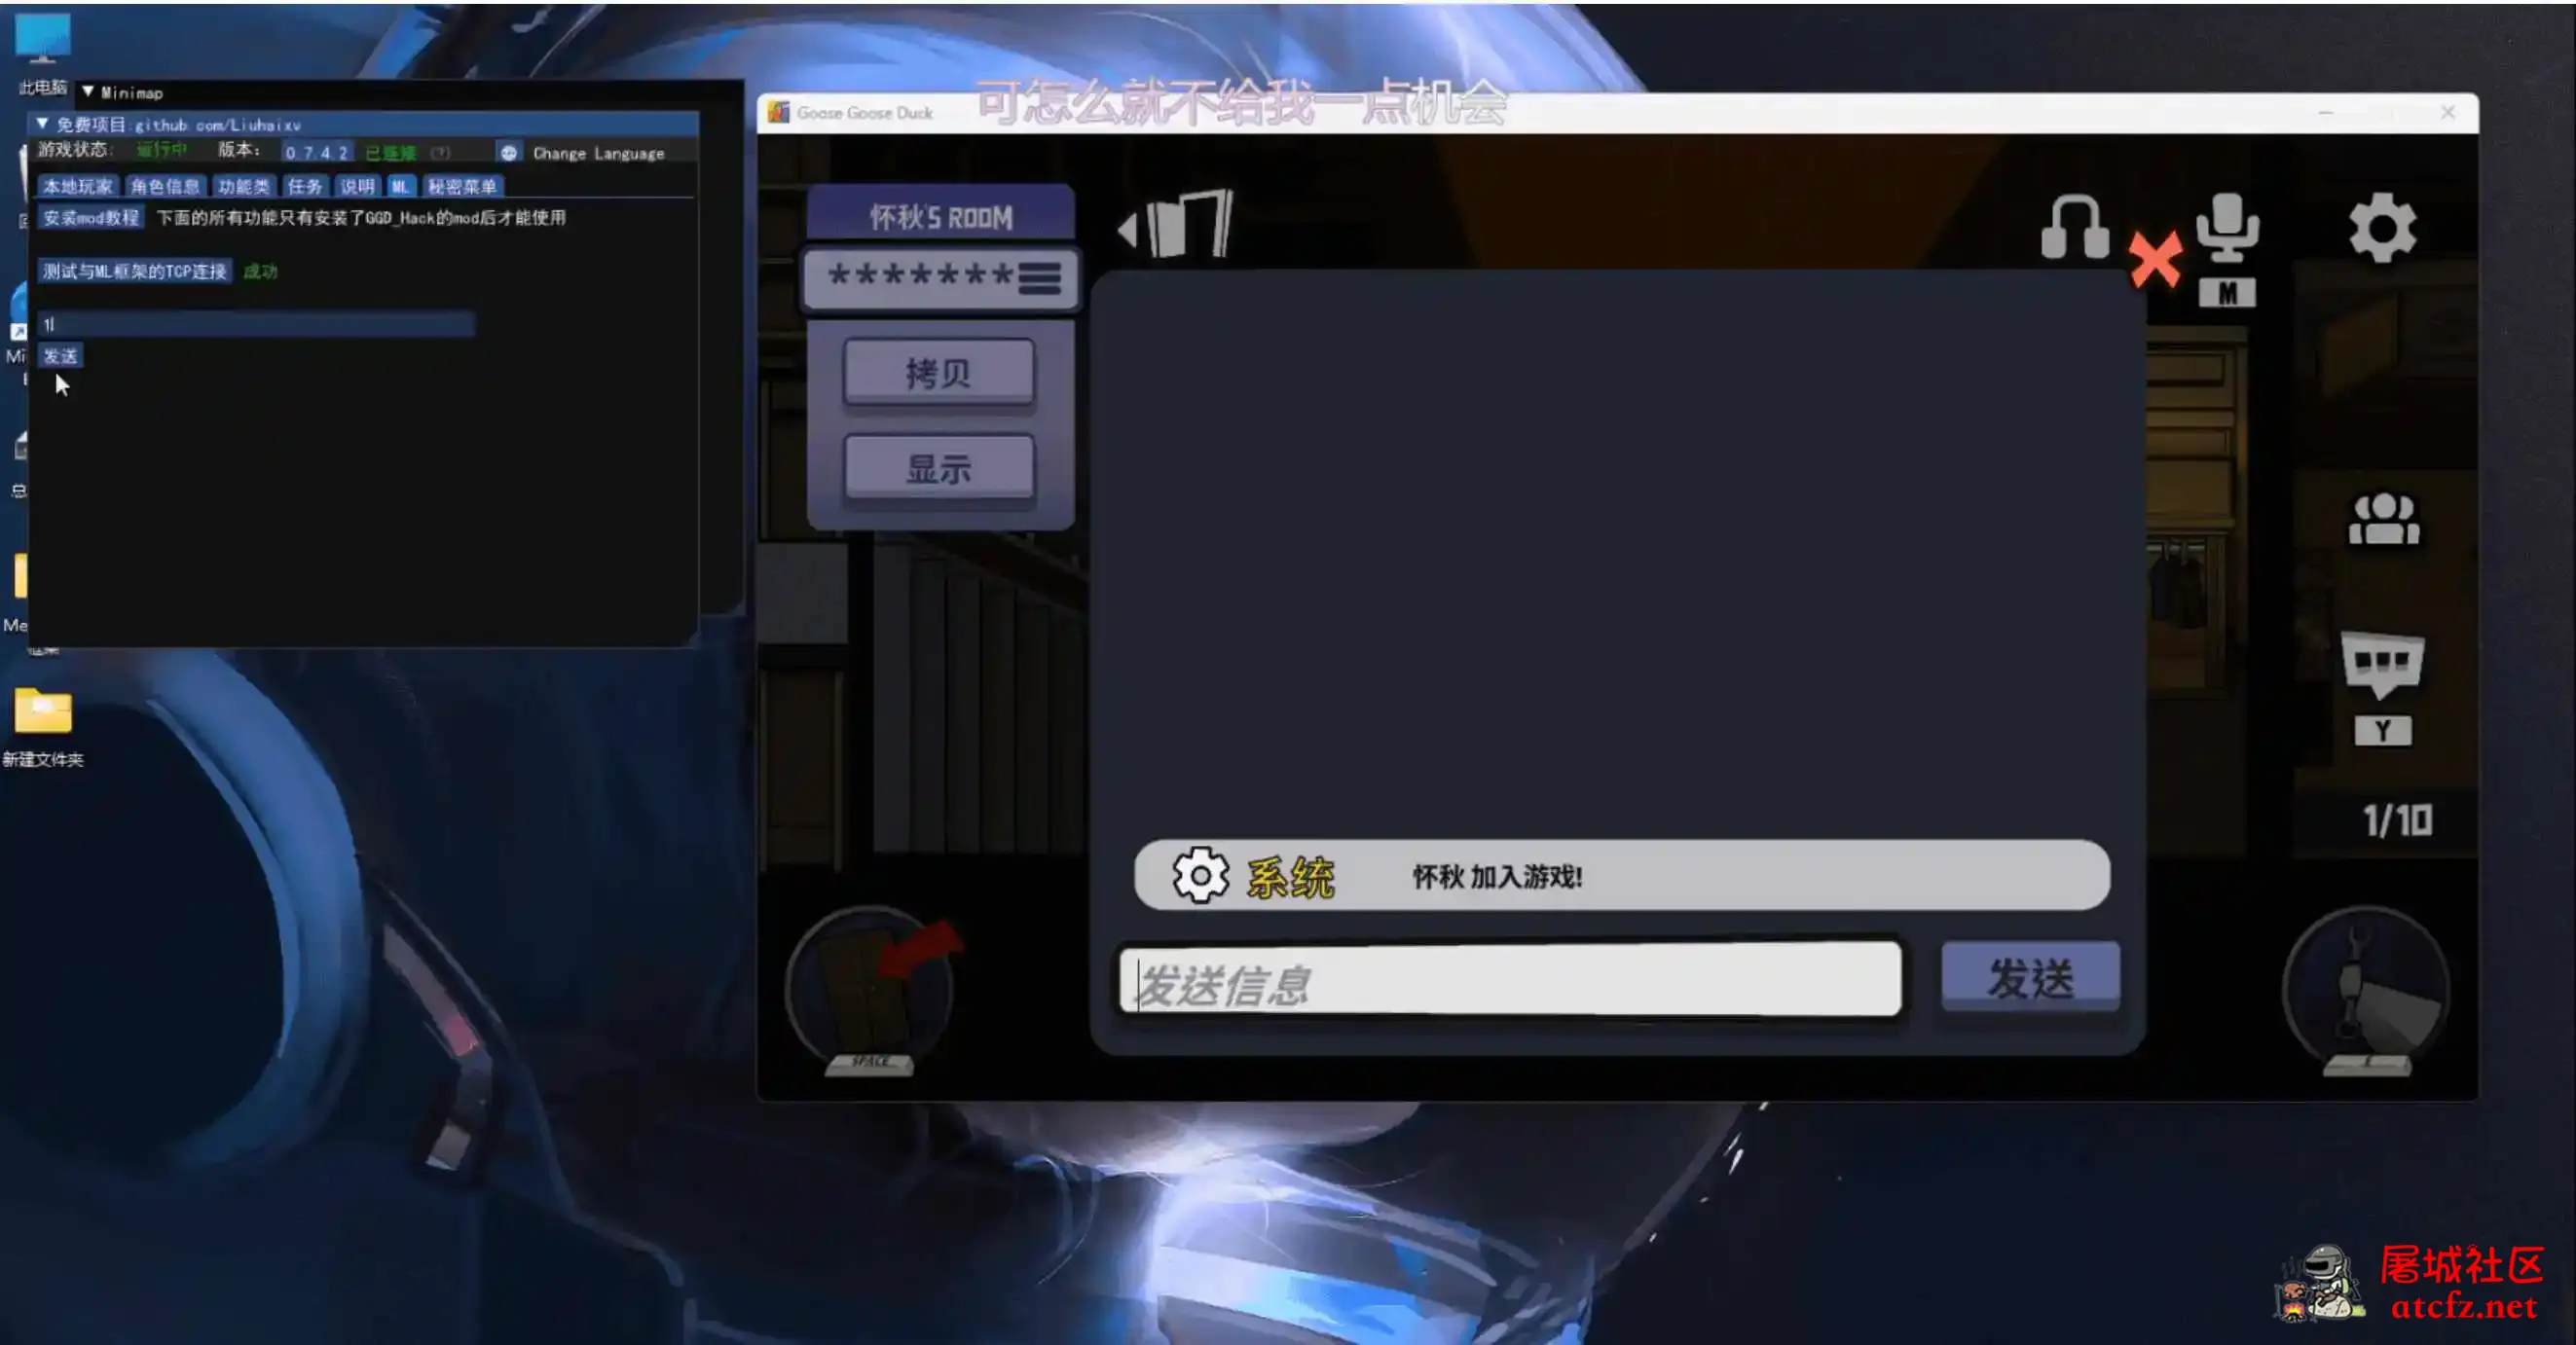 鹅鸭杀Minimp显玩家传送无冷却穿墙多功能辅助v1.5.1 屠城辅助网www.tcfz1.com238